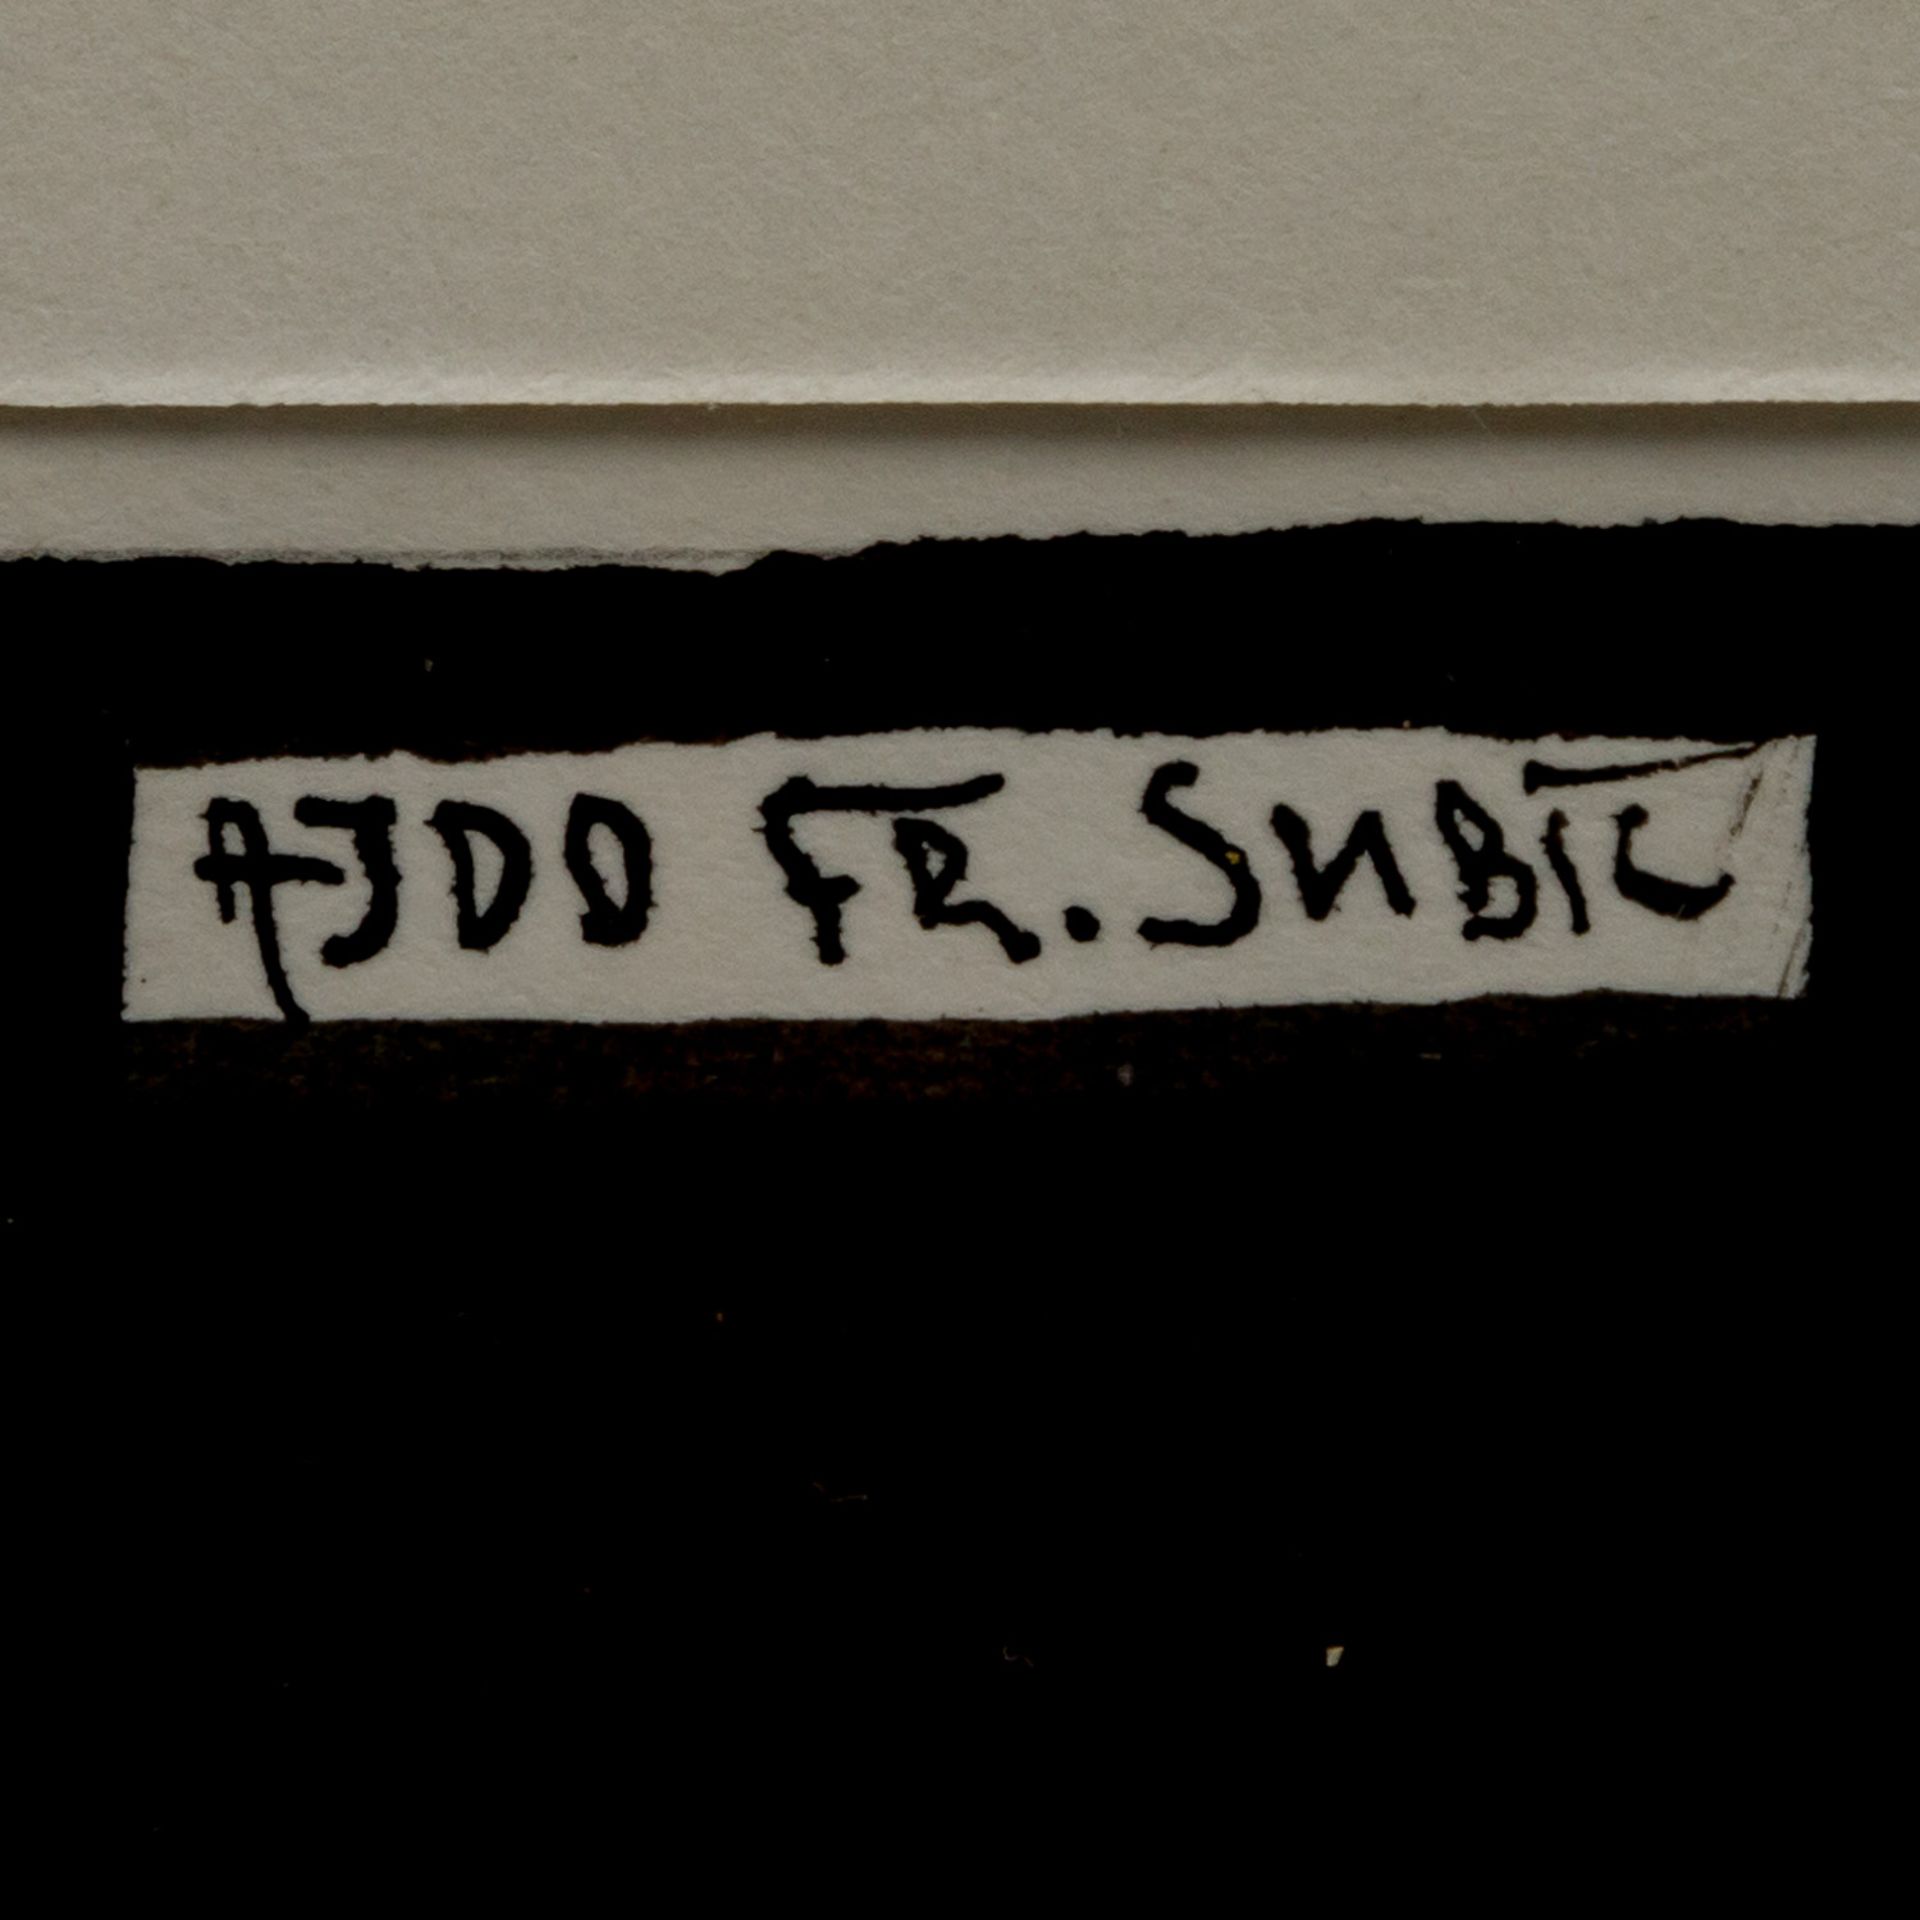 SUBIC, AJDO FR. (20. Jh.), "Paar unter einem Baum",lavierte Tusche über Bleistift/Papier, - Bild 3 aus 4